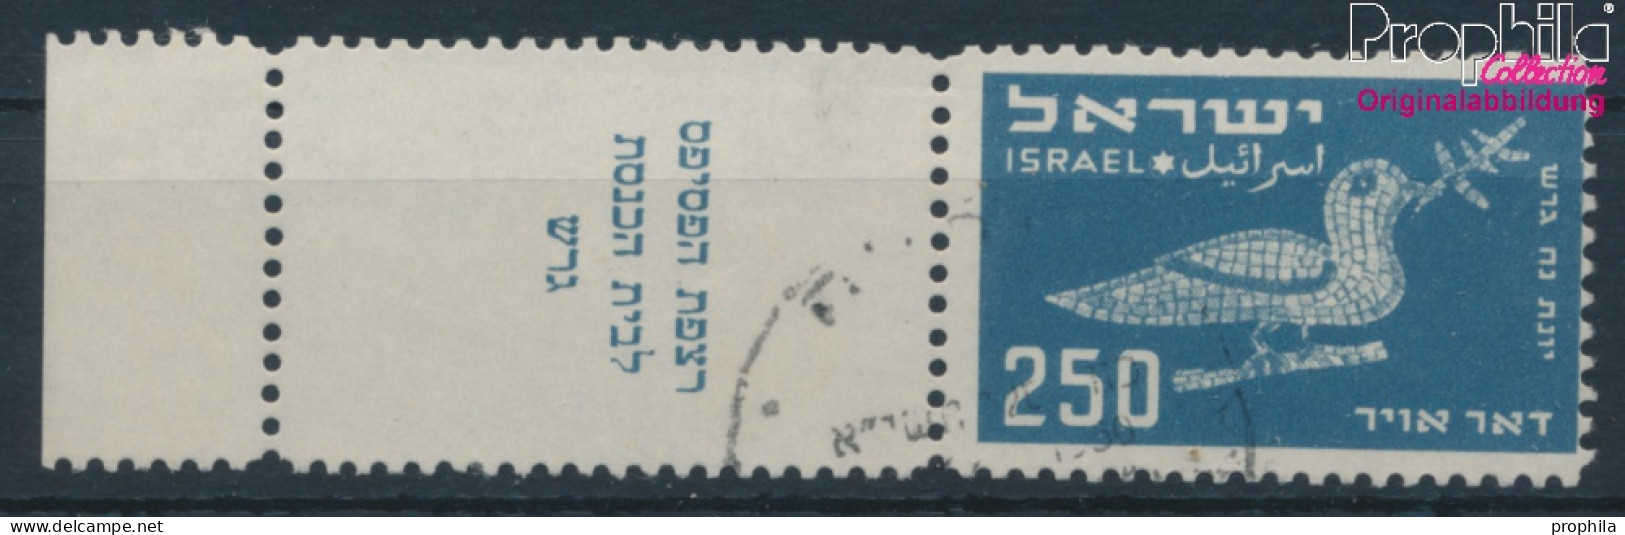 Israel 38 Mit Tab Gestempelt 1950 Vogeldarstellungen (10252007 - Usados (con Tab)